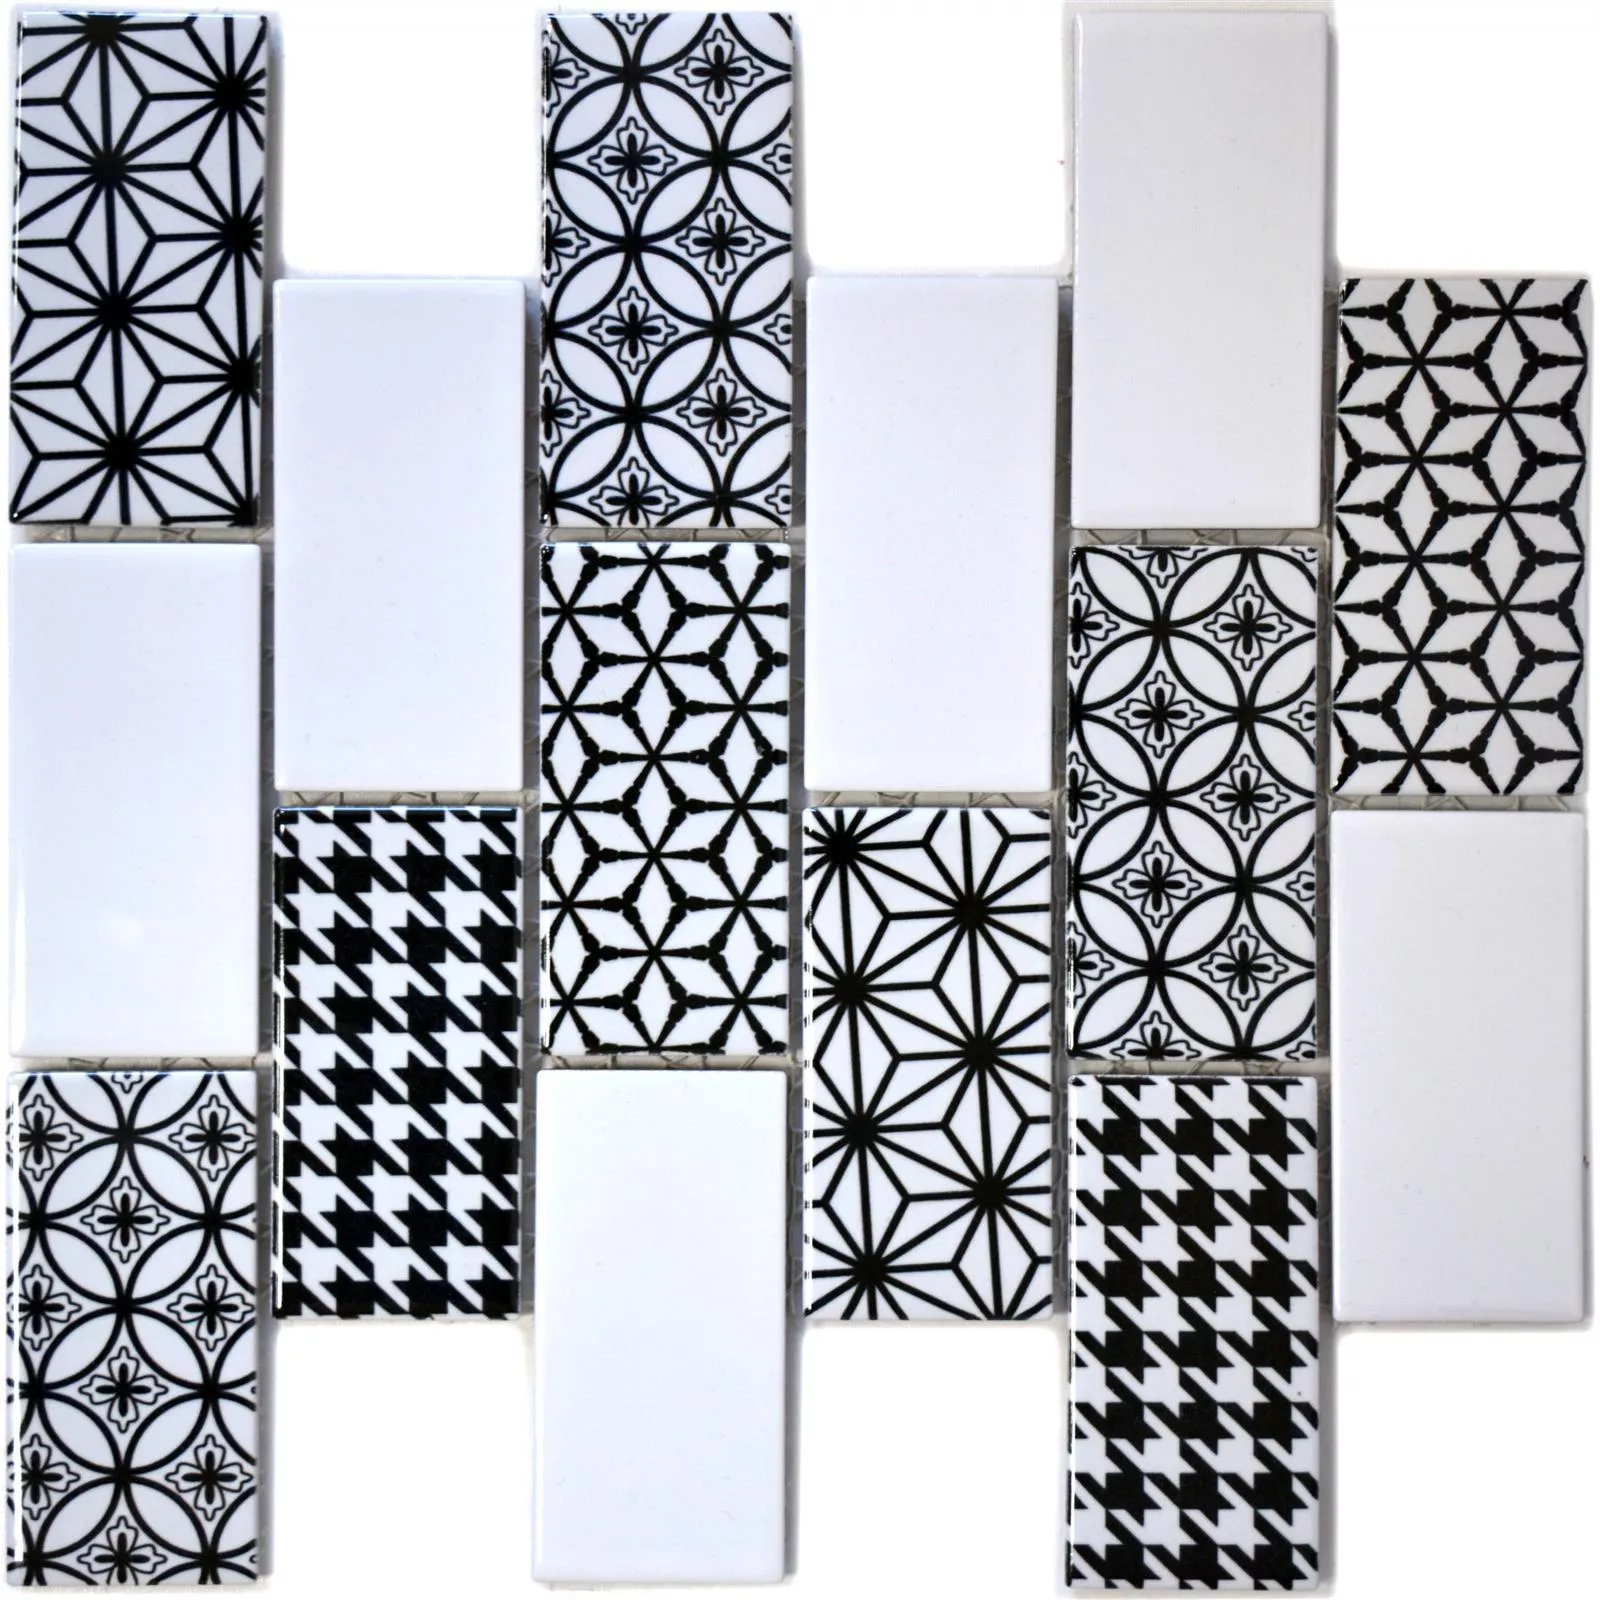 Sample Mosaic Tiles Panayot White